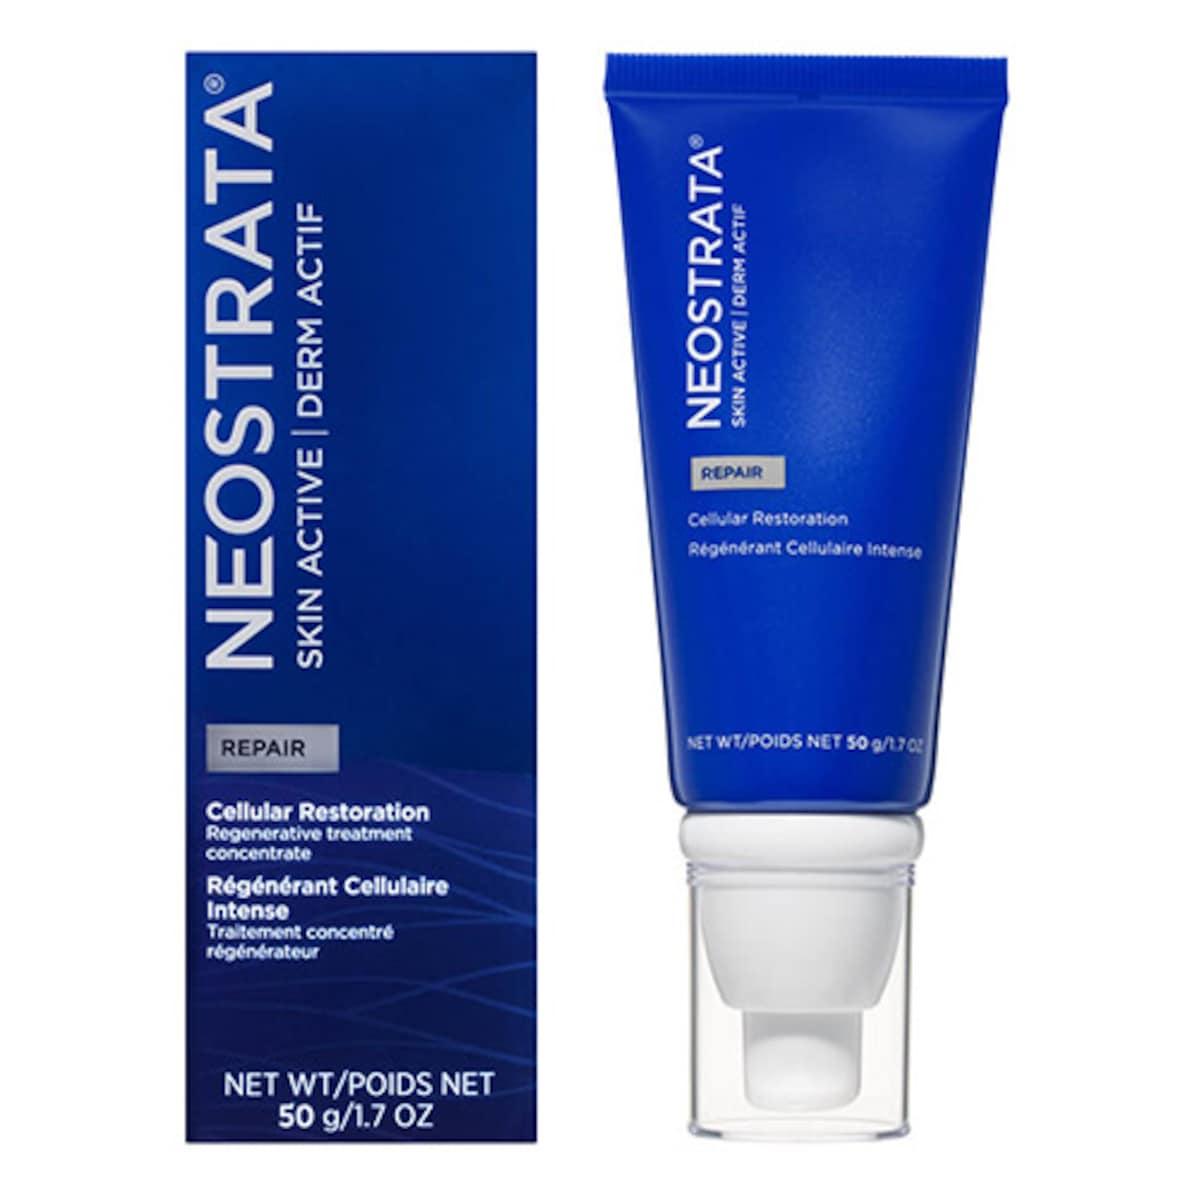 Neostrata Skin Active Repair Cellular Restoration Cream 50g